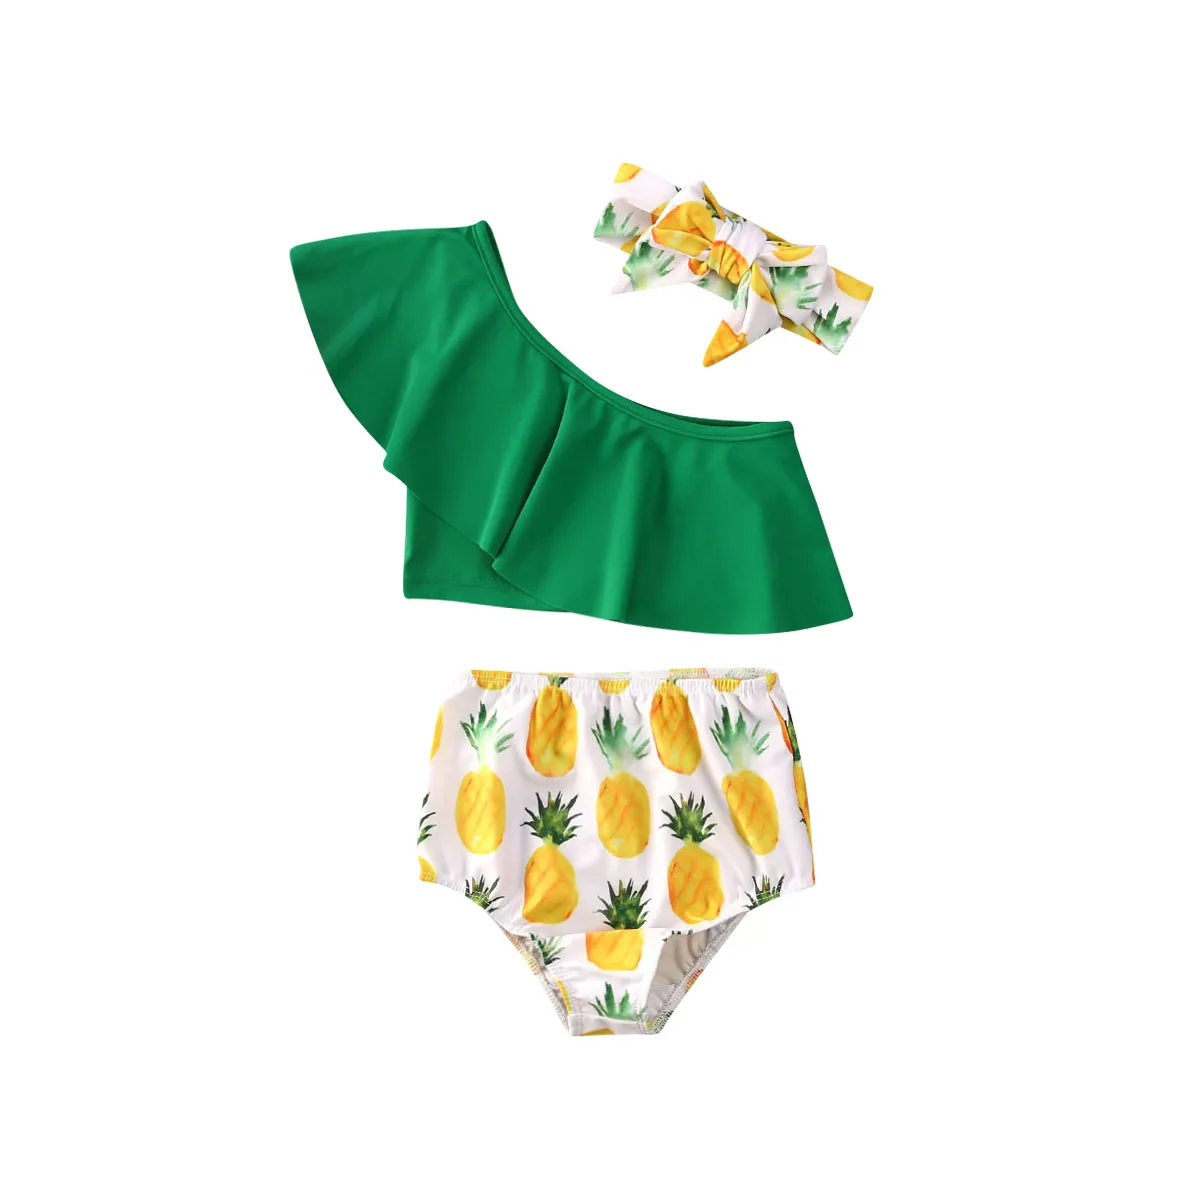 2020 одежда для купания маленьких девочек купальный костюм бикини комплект из 3